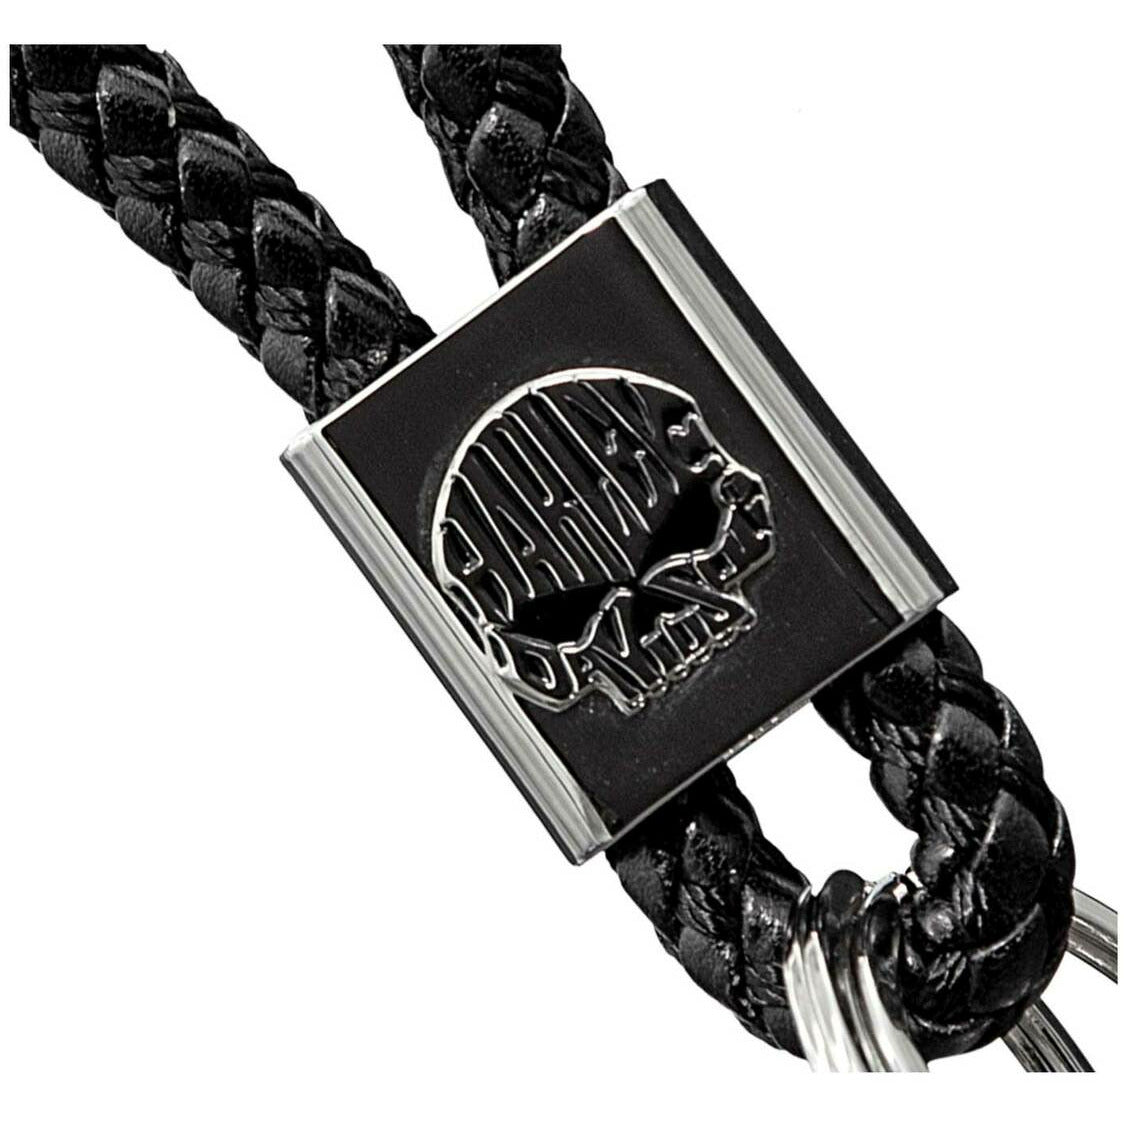 Harley-Davidson® Willie G Skull Logo Vinyl Braided Strap Key Chain